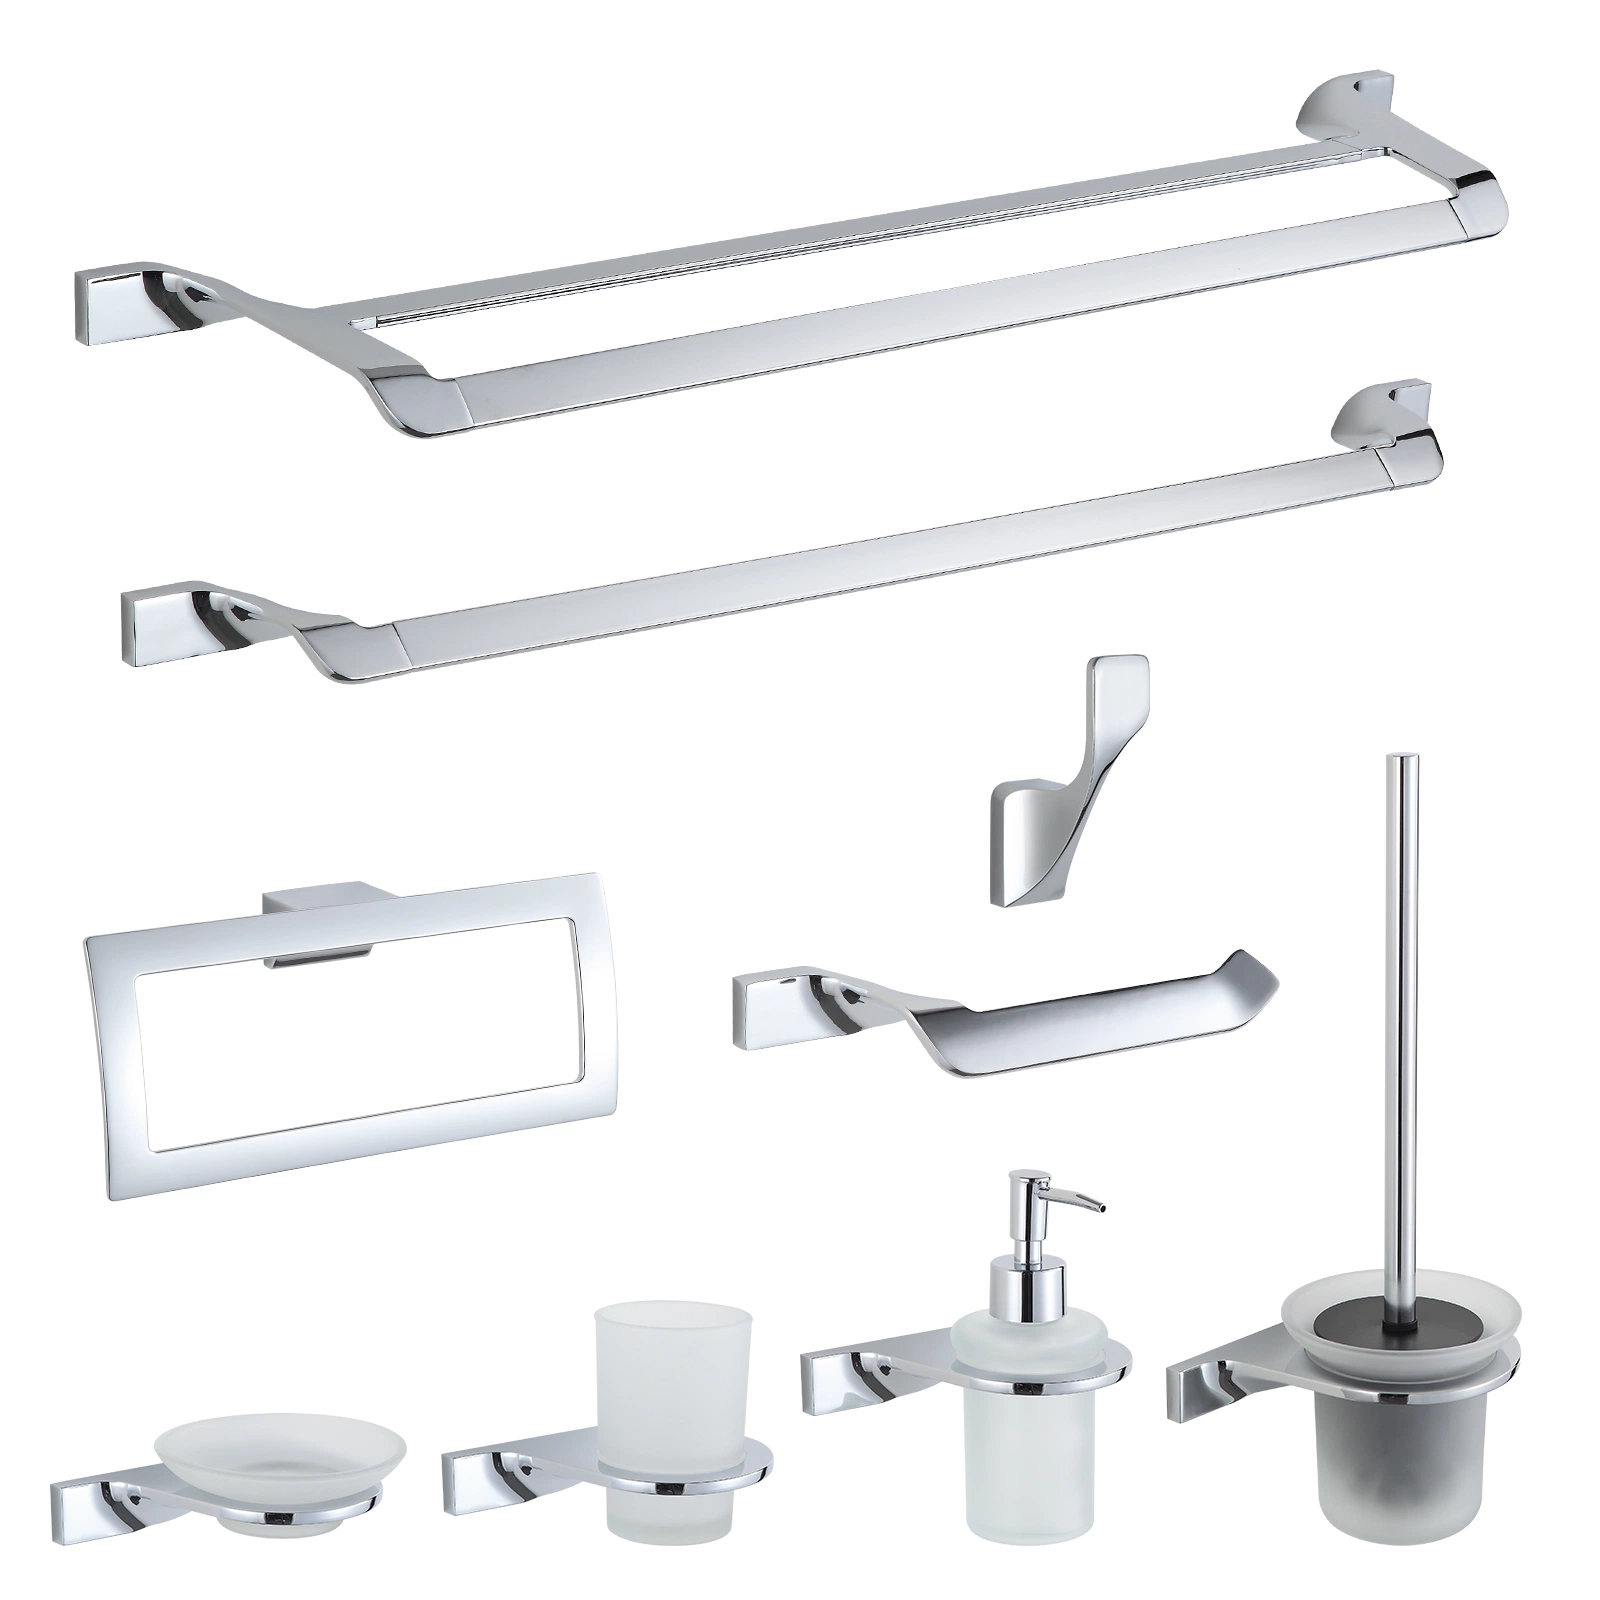 Moderna aleación de zinc montaje en pared Accesorios de baño toalla Bar Set Accesorios de baño